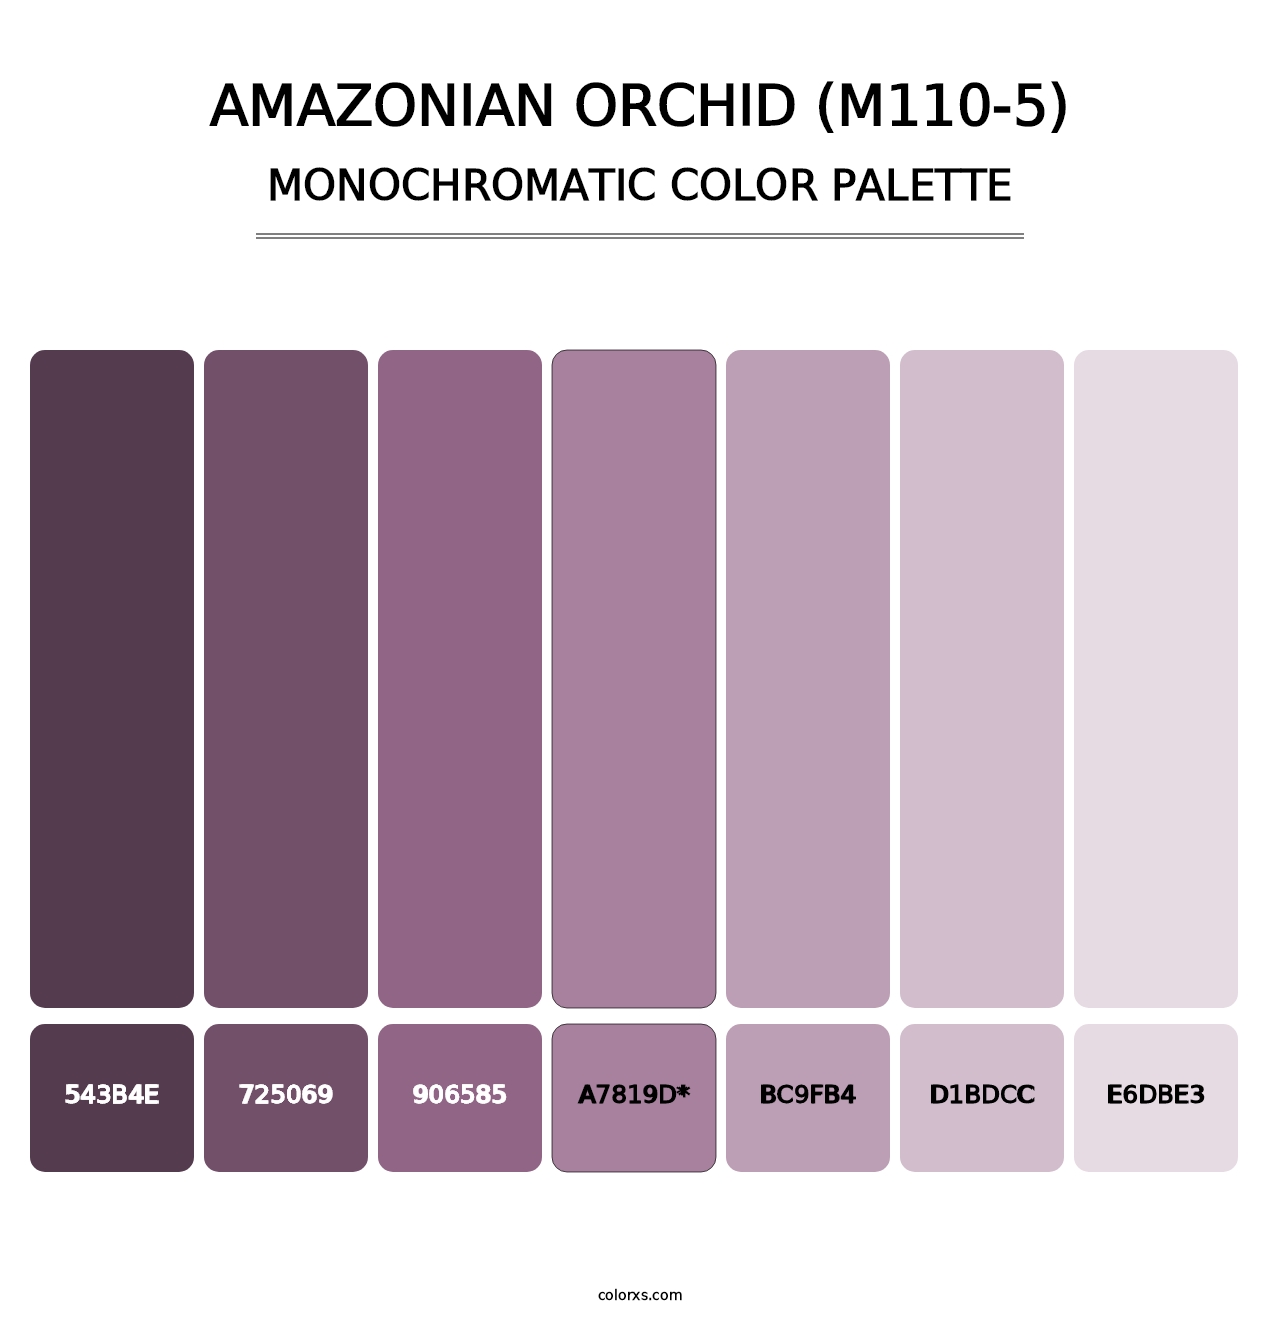 Amazonian Orchid (M110-5) - Monochromatic Color Palette